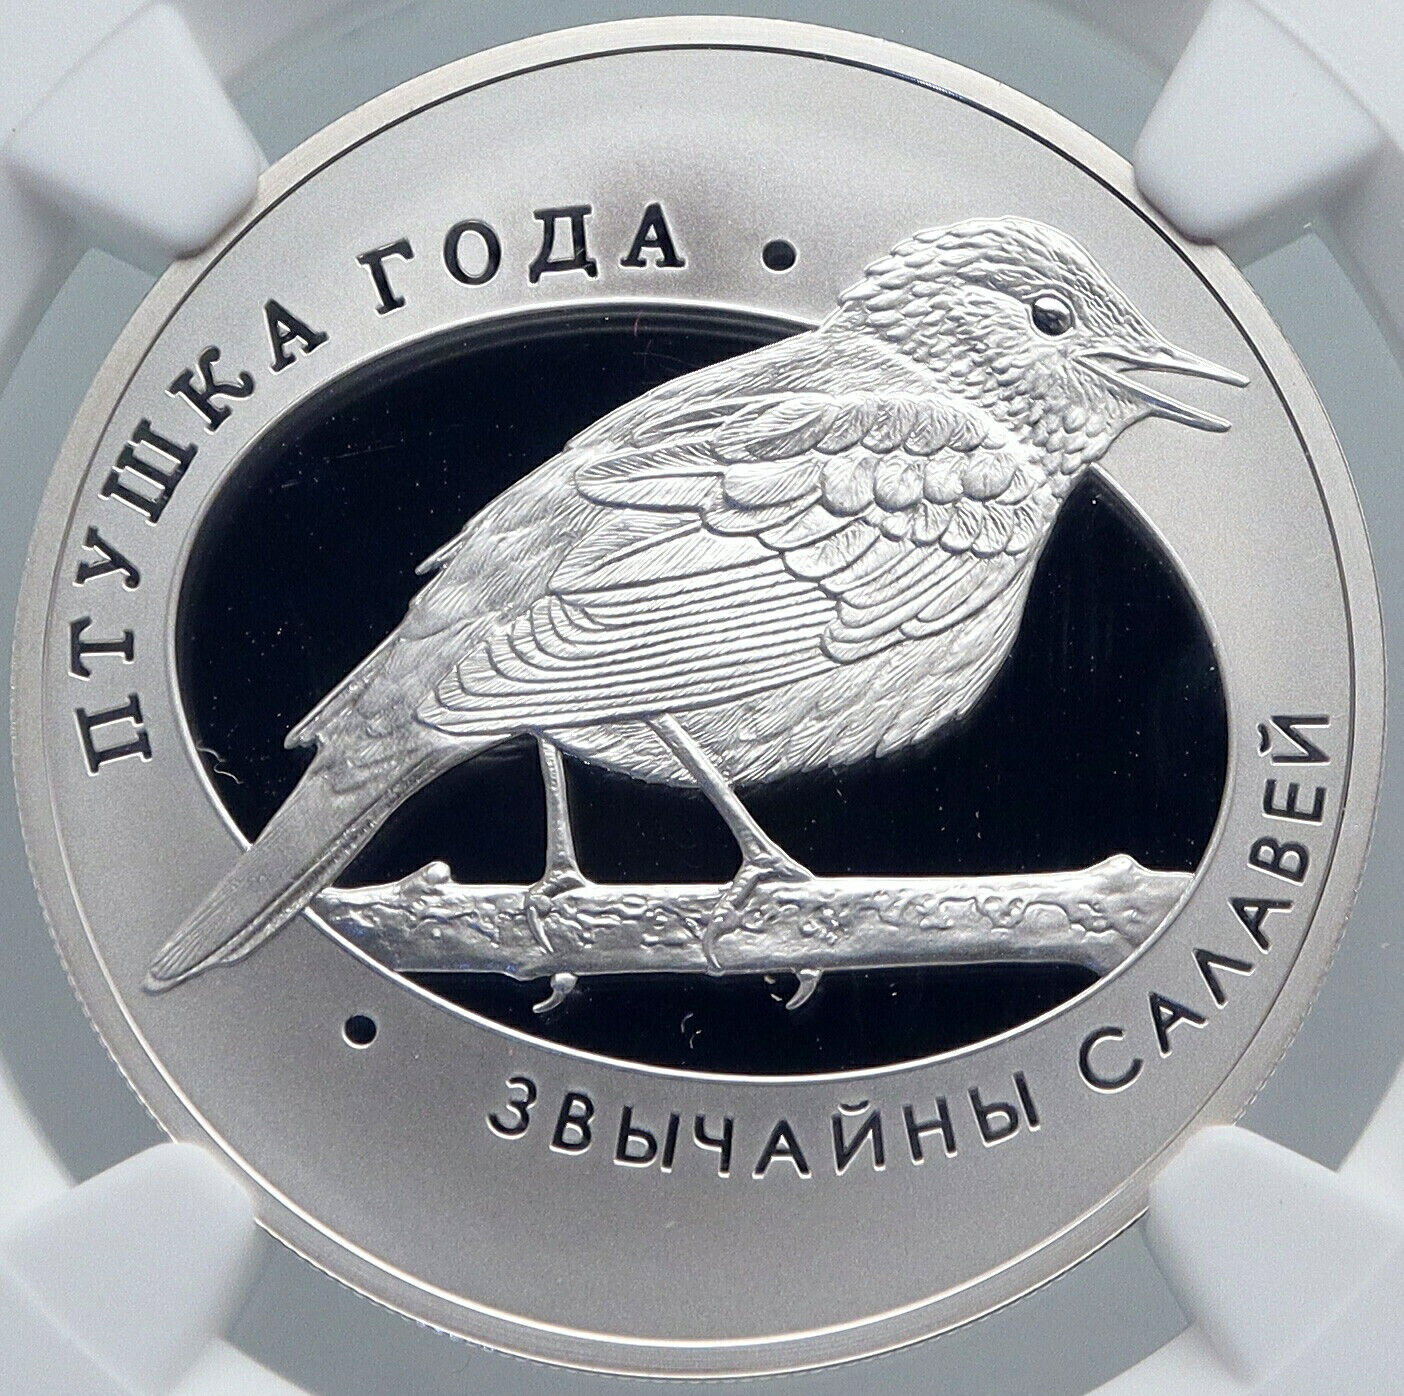 【極美品/品質保証書付】 アンティークコイン コイン 金貨 銀貨 [送料無料] 2007 BELARUS Animals NIGHTINGALE BIRD Pet Proof Silver 10 Rouble Coin NGC i89230